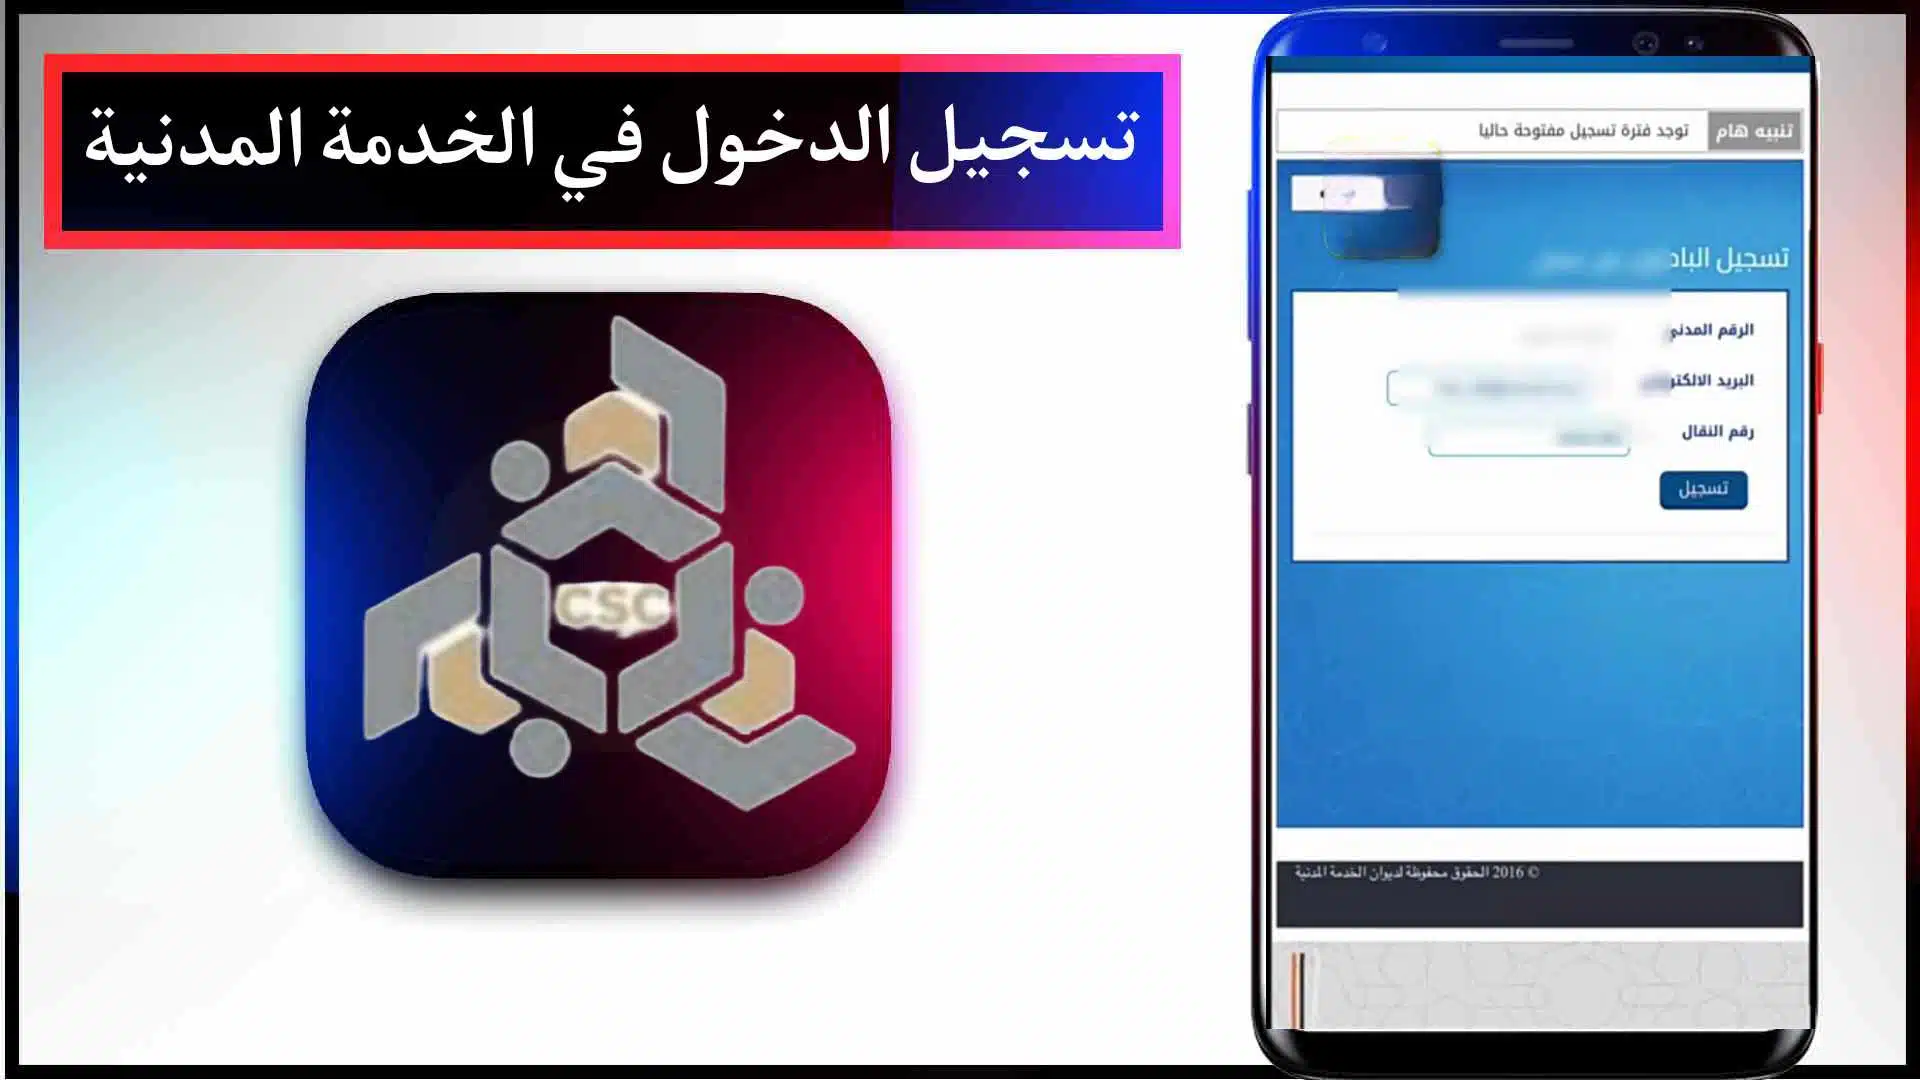 موقع ديوان الخدمه المدنية الجديد الكويت وتسجيل الدخول مجانا 1